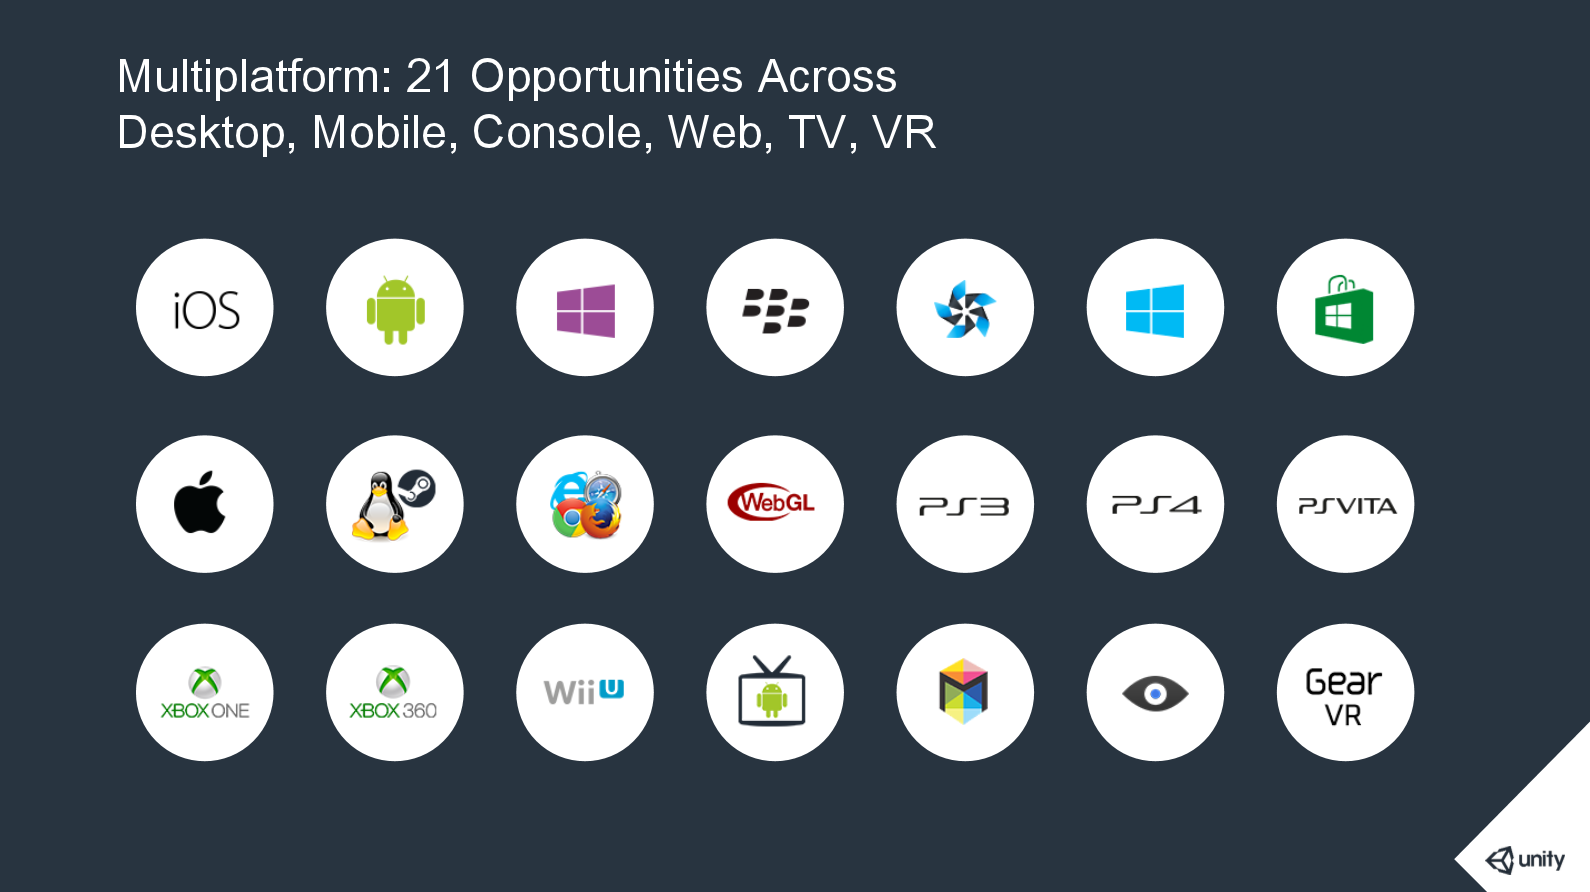 Unity5 leading multiplatform support (21 platforms)